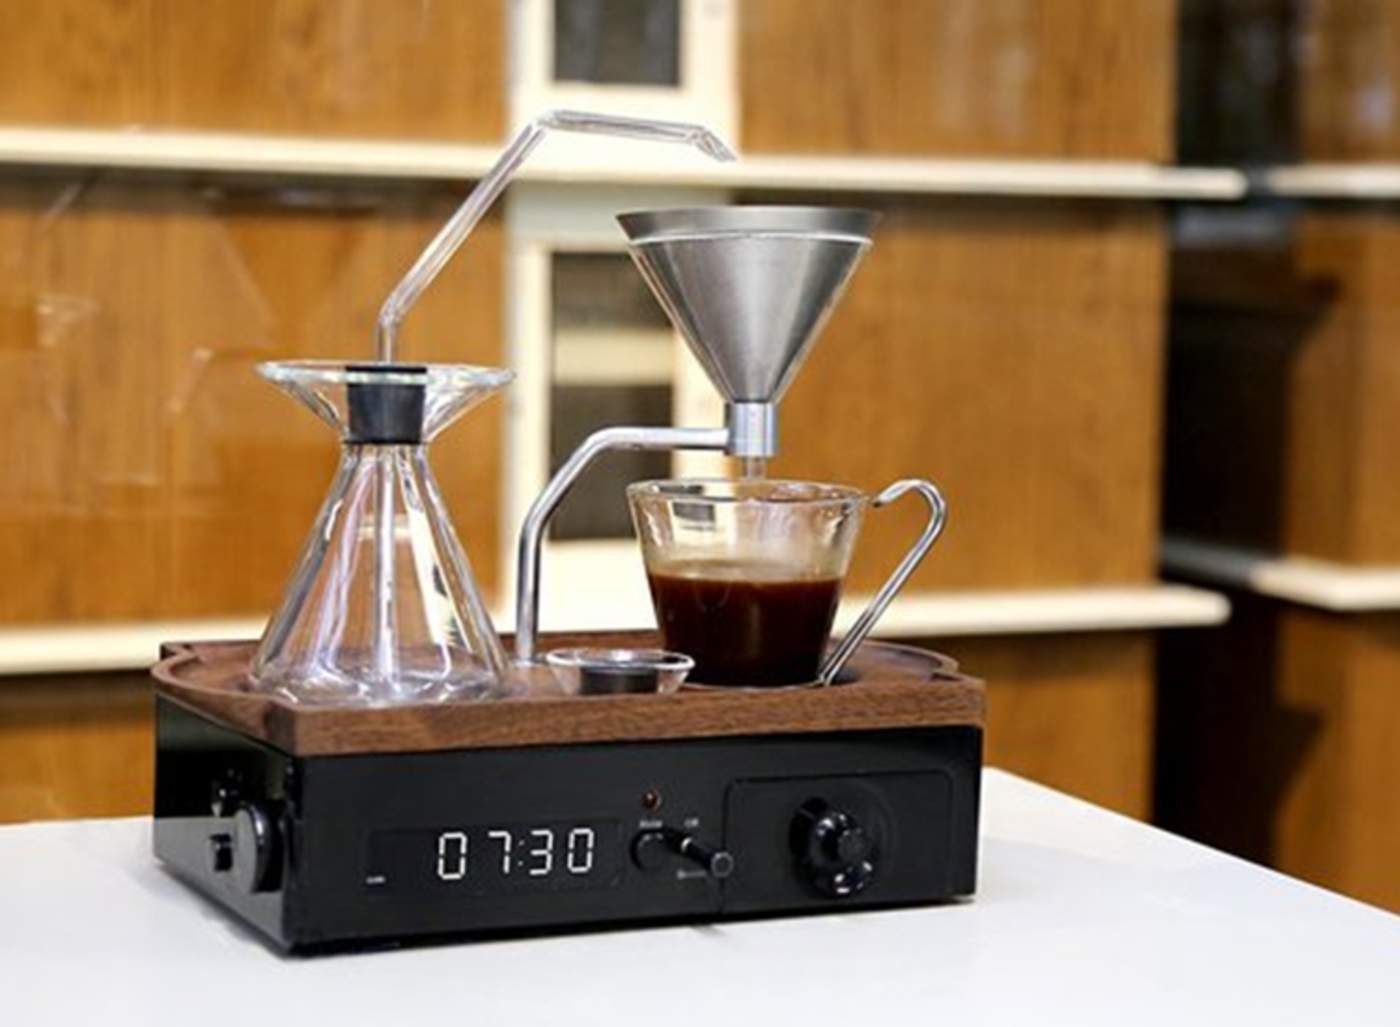 Un despertador que prepara café cuando suena la alarma